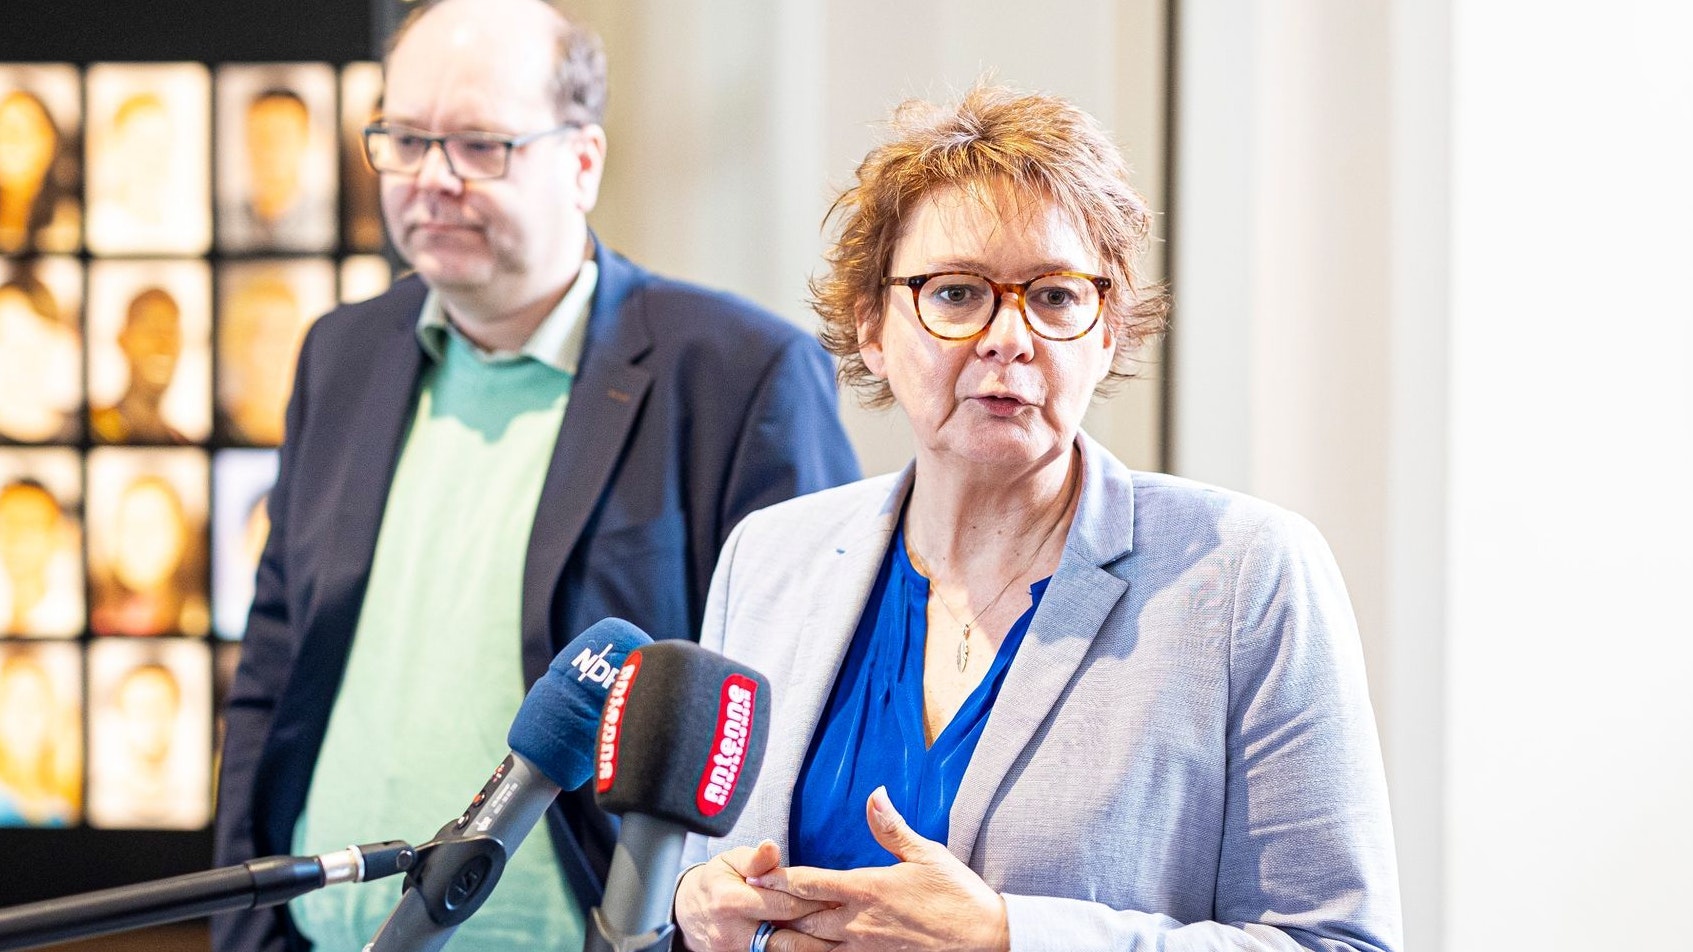 Sozialministerin Daniela Behrens (SPD), hier mit Christian Meyer von den Grünen, sieht dringenden Handlungsbedarf. Foto: dpa/Frankenberg